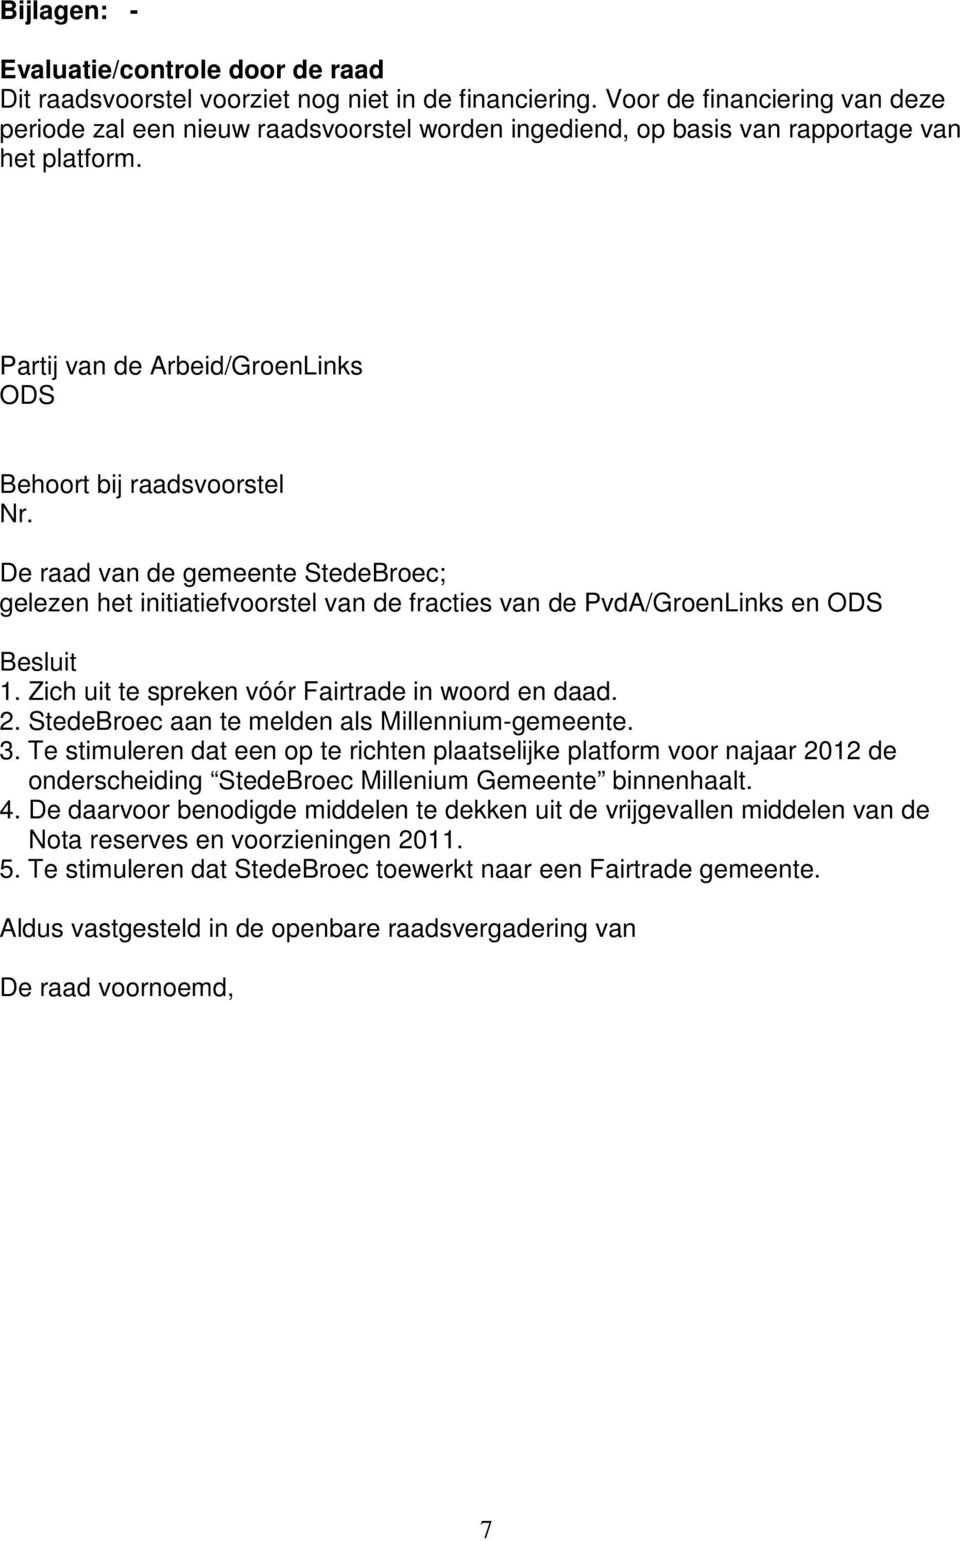 De raad van de gemeente StedeBroec; gelezen het initiatiefvoorstel van de fracties van de PvdA/GroenLinks en ODS Besluit 1. Zich uit te spreken vóór Fairtrade in woord en daad. 2.